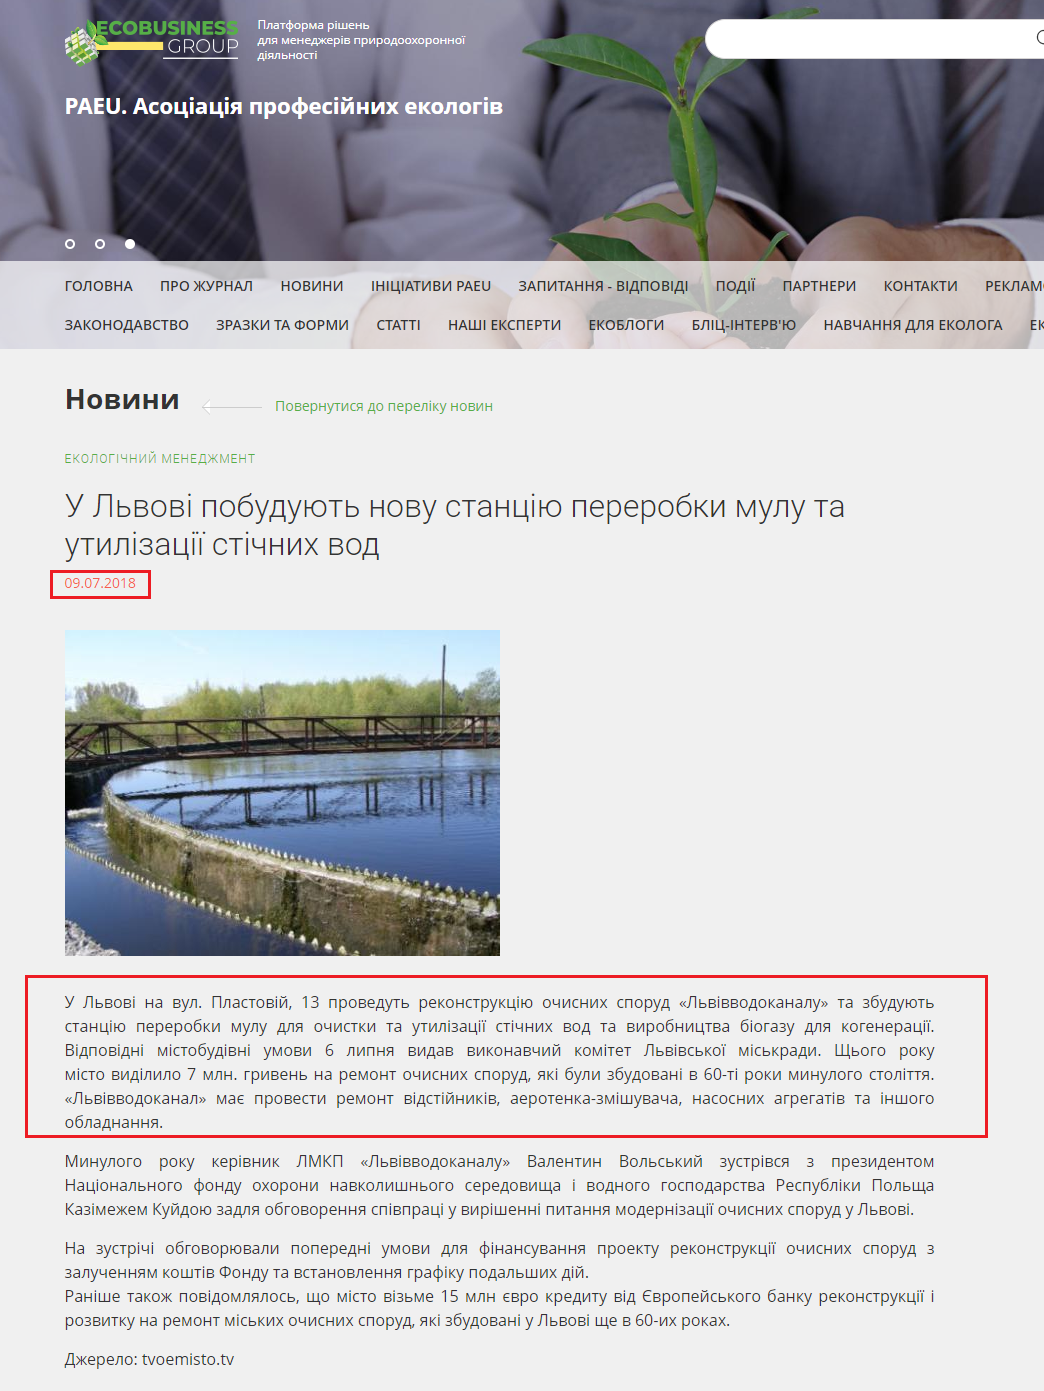 http://ecolog-ua.com/news/u-lvovi-pobuduyut-novu-stanciyu-pererobky-mulu-ta-utylizaciyi-stichnyh-vod